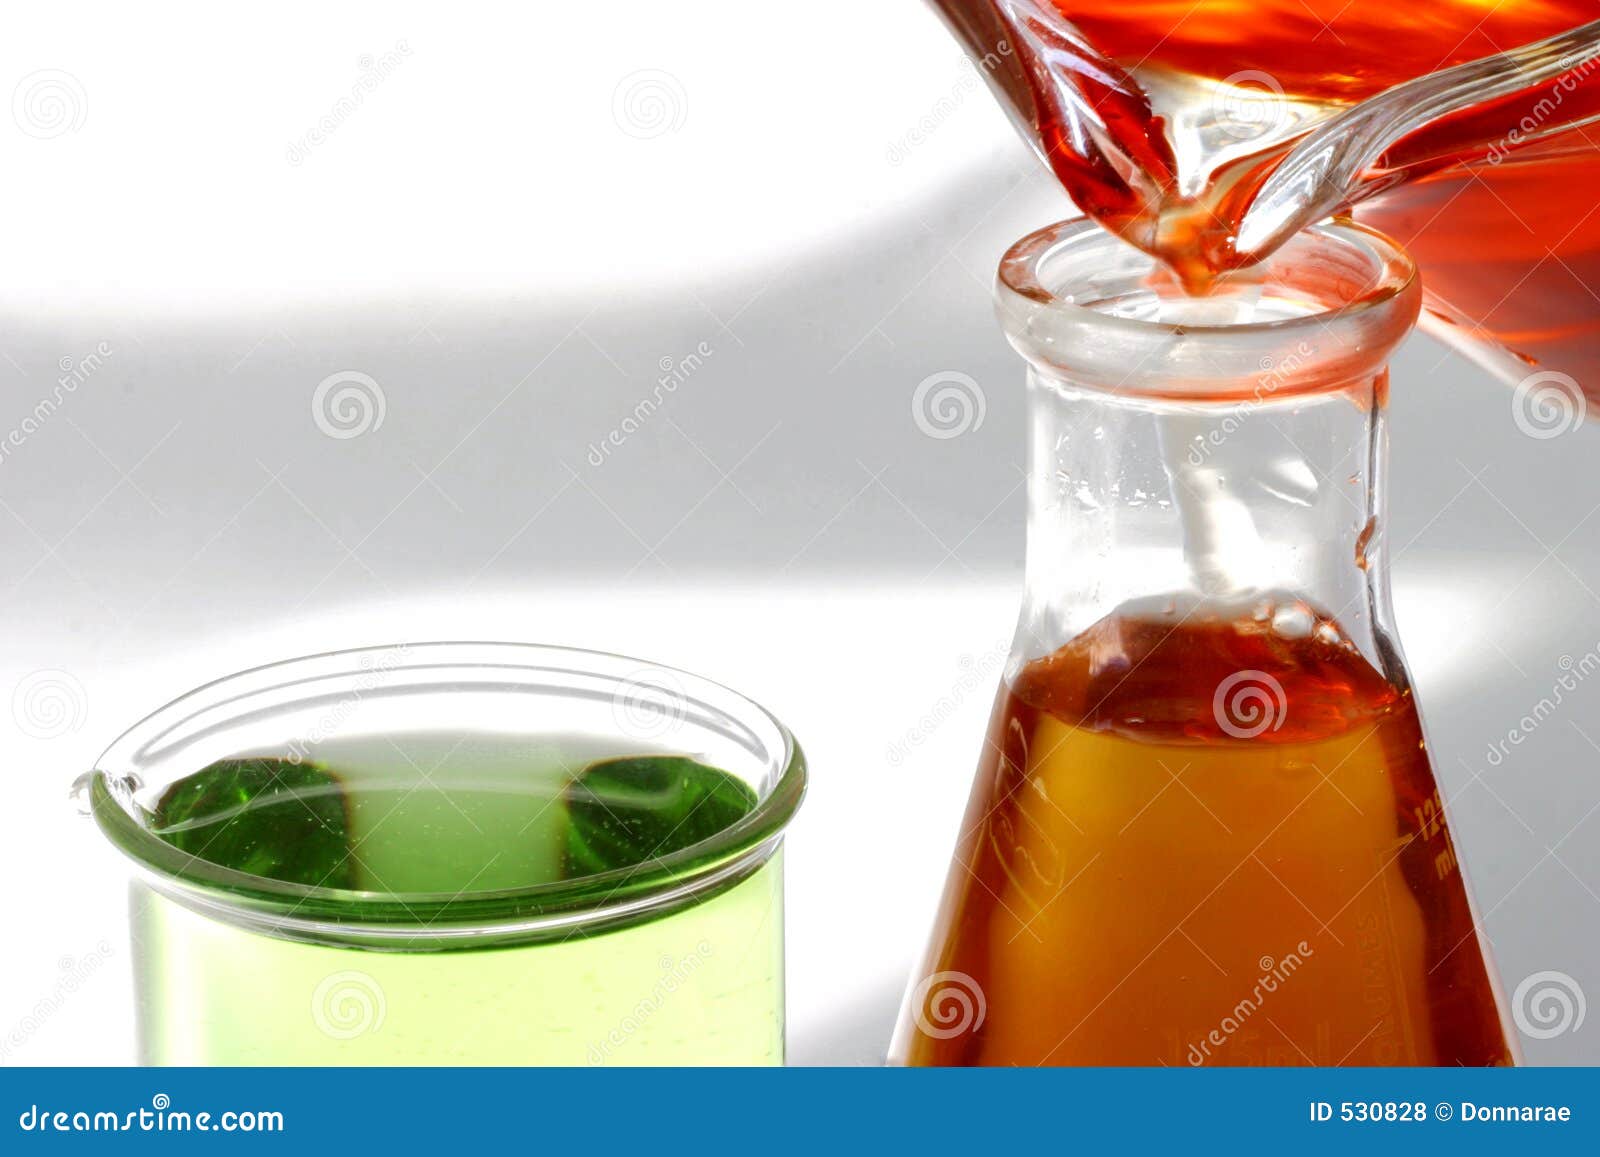 sterile beakers & liquid. test